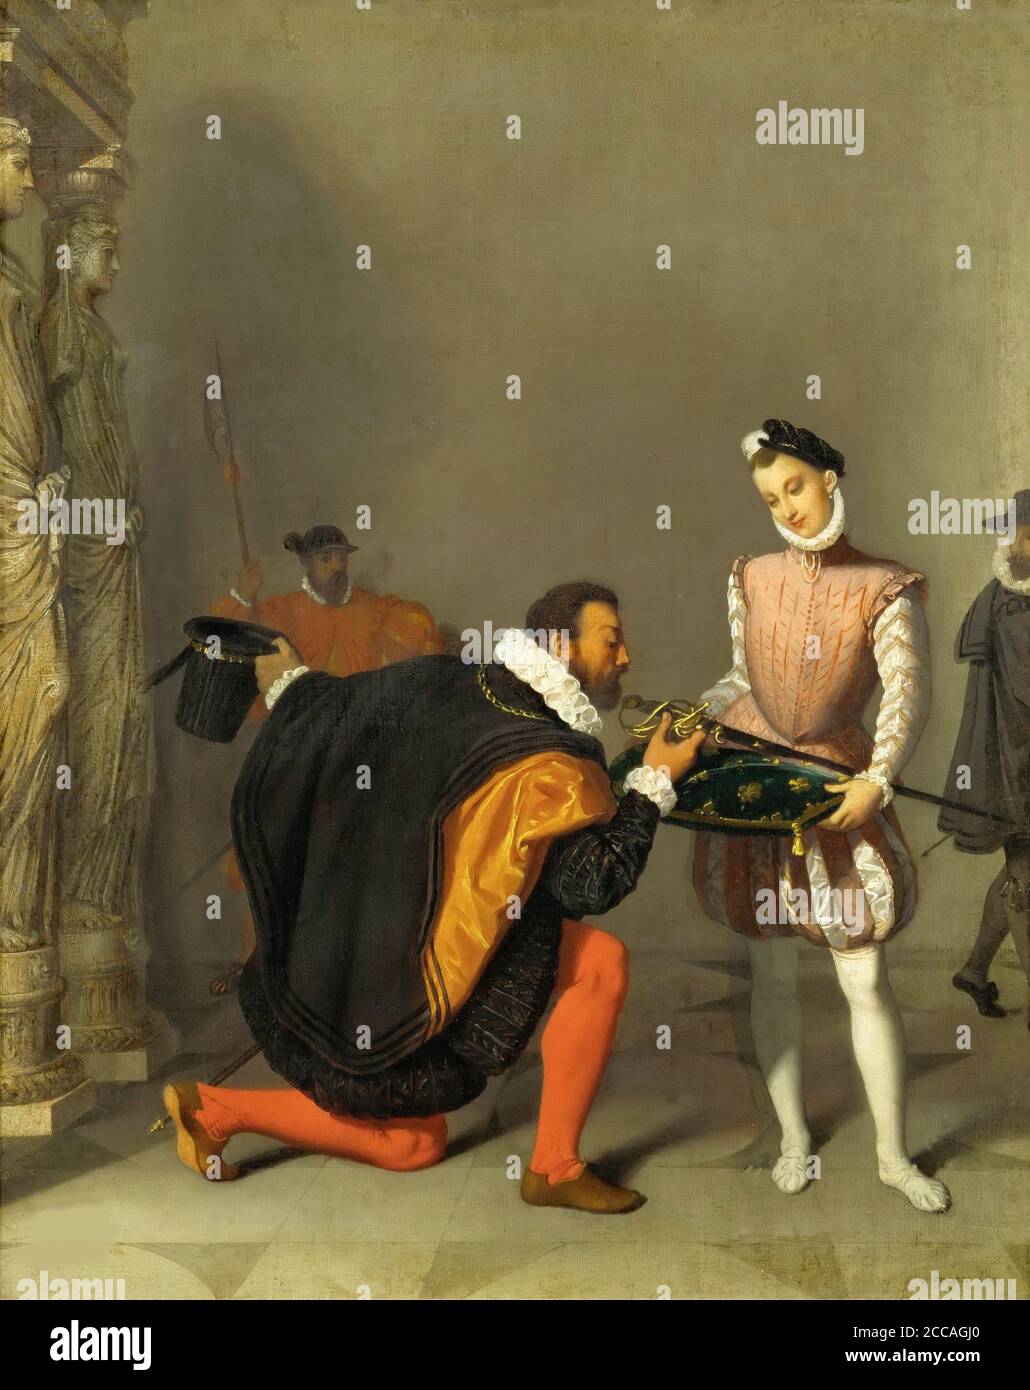 Don Pedro of Toledo Kissing Henry IV's Sword. Museum: Musée des beaux-arts de Pau. Author: JEAN AUGUSTE DOMINIQUE INGRES. Stock Photo